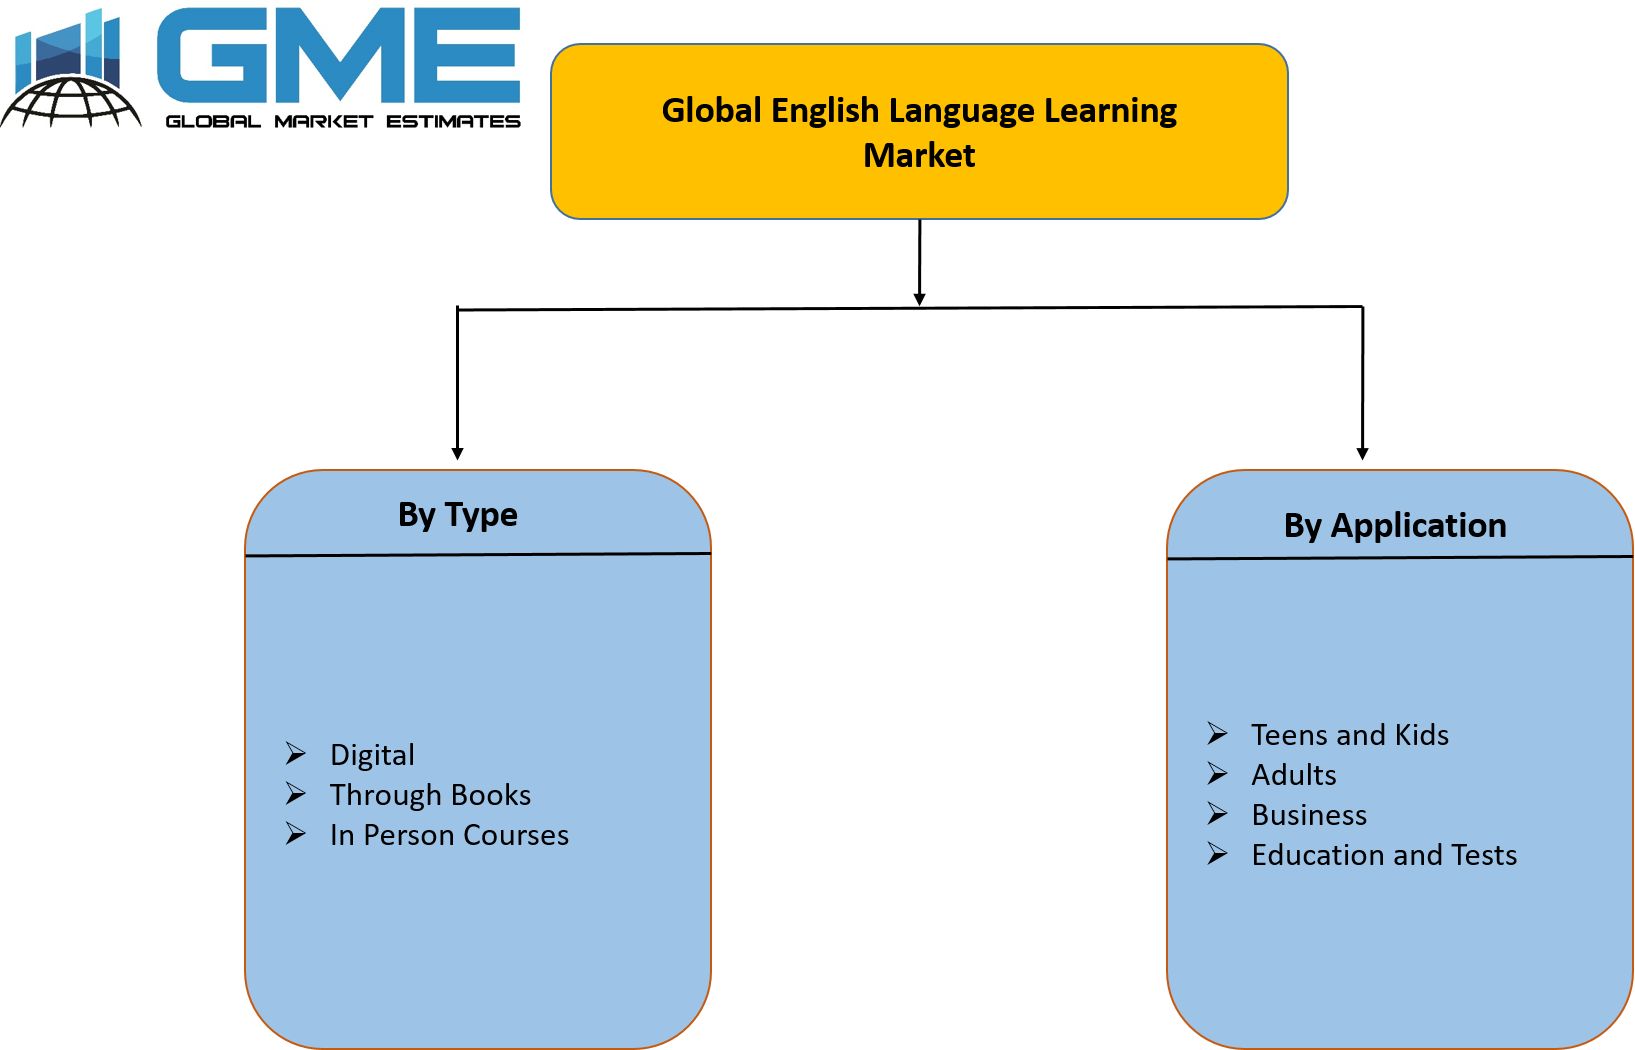 Global English Language Learning Market Segmentation